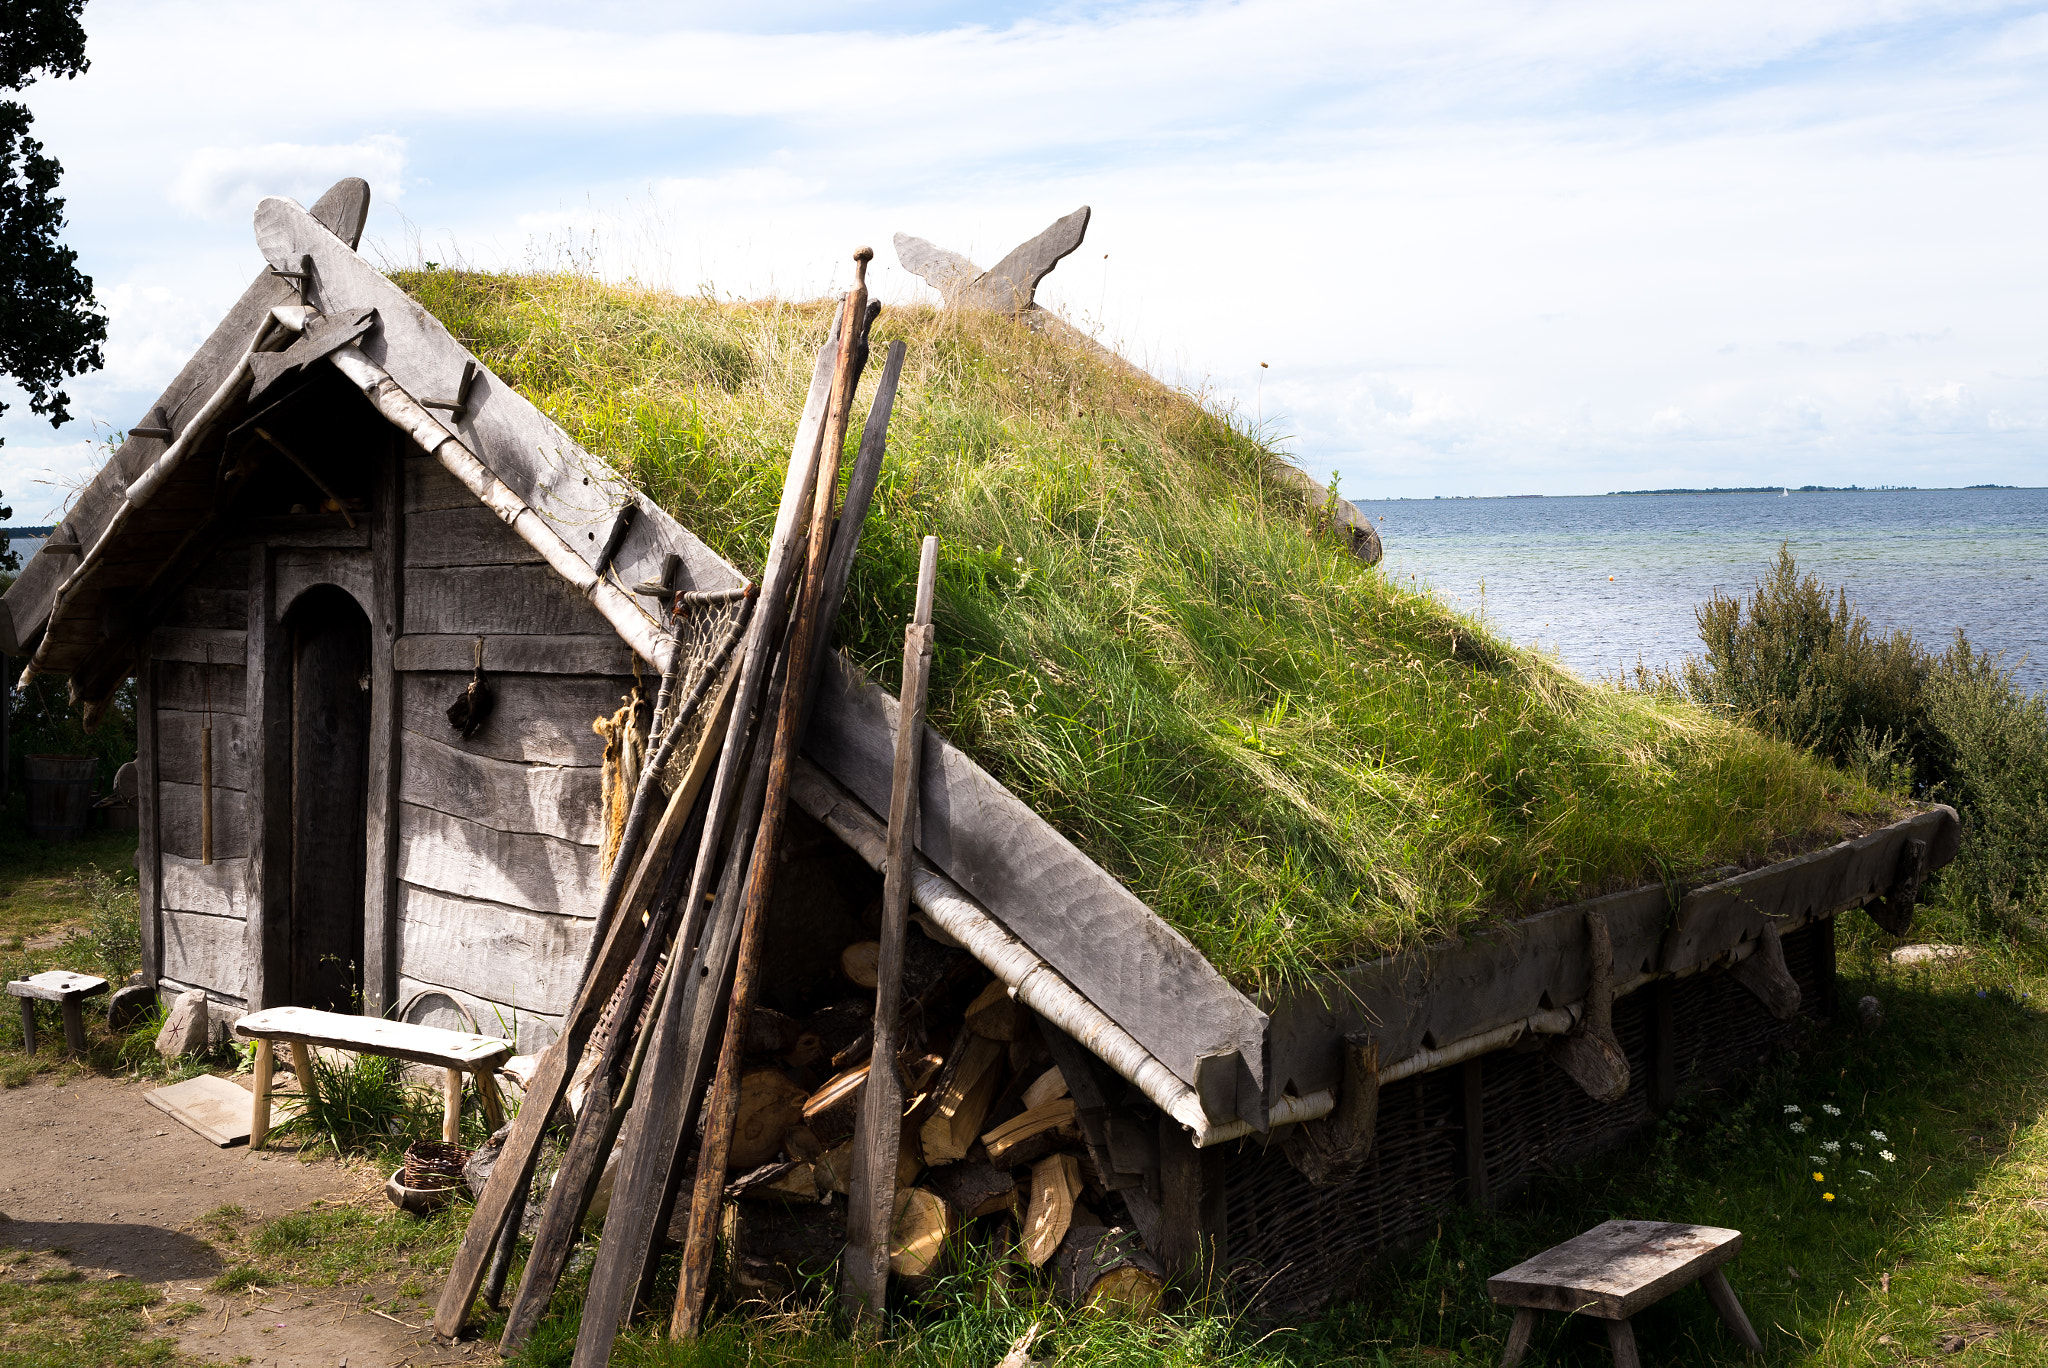 AF Zoom-Nikkor 35-70mm f/3.3-4.5 N sample photo. Sweden dreams - viking home photography